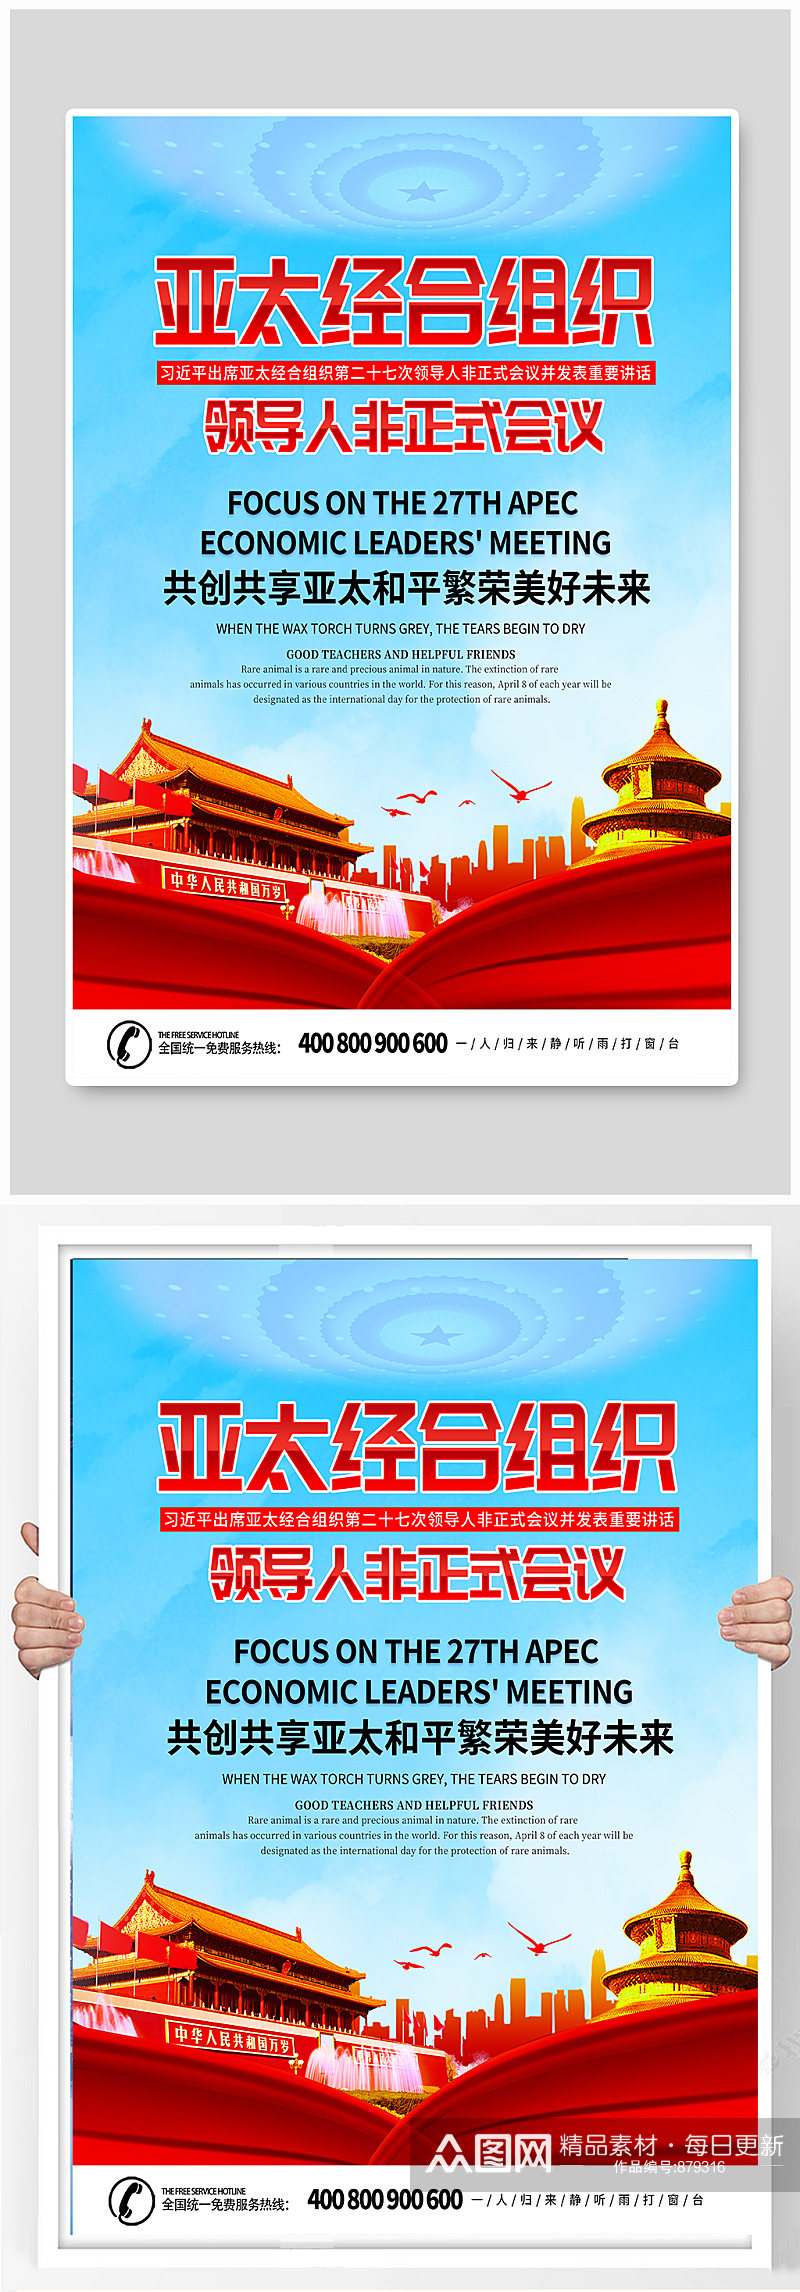 简约红字亚太经合组织非正式会议党建海报素材